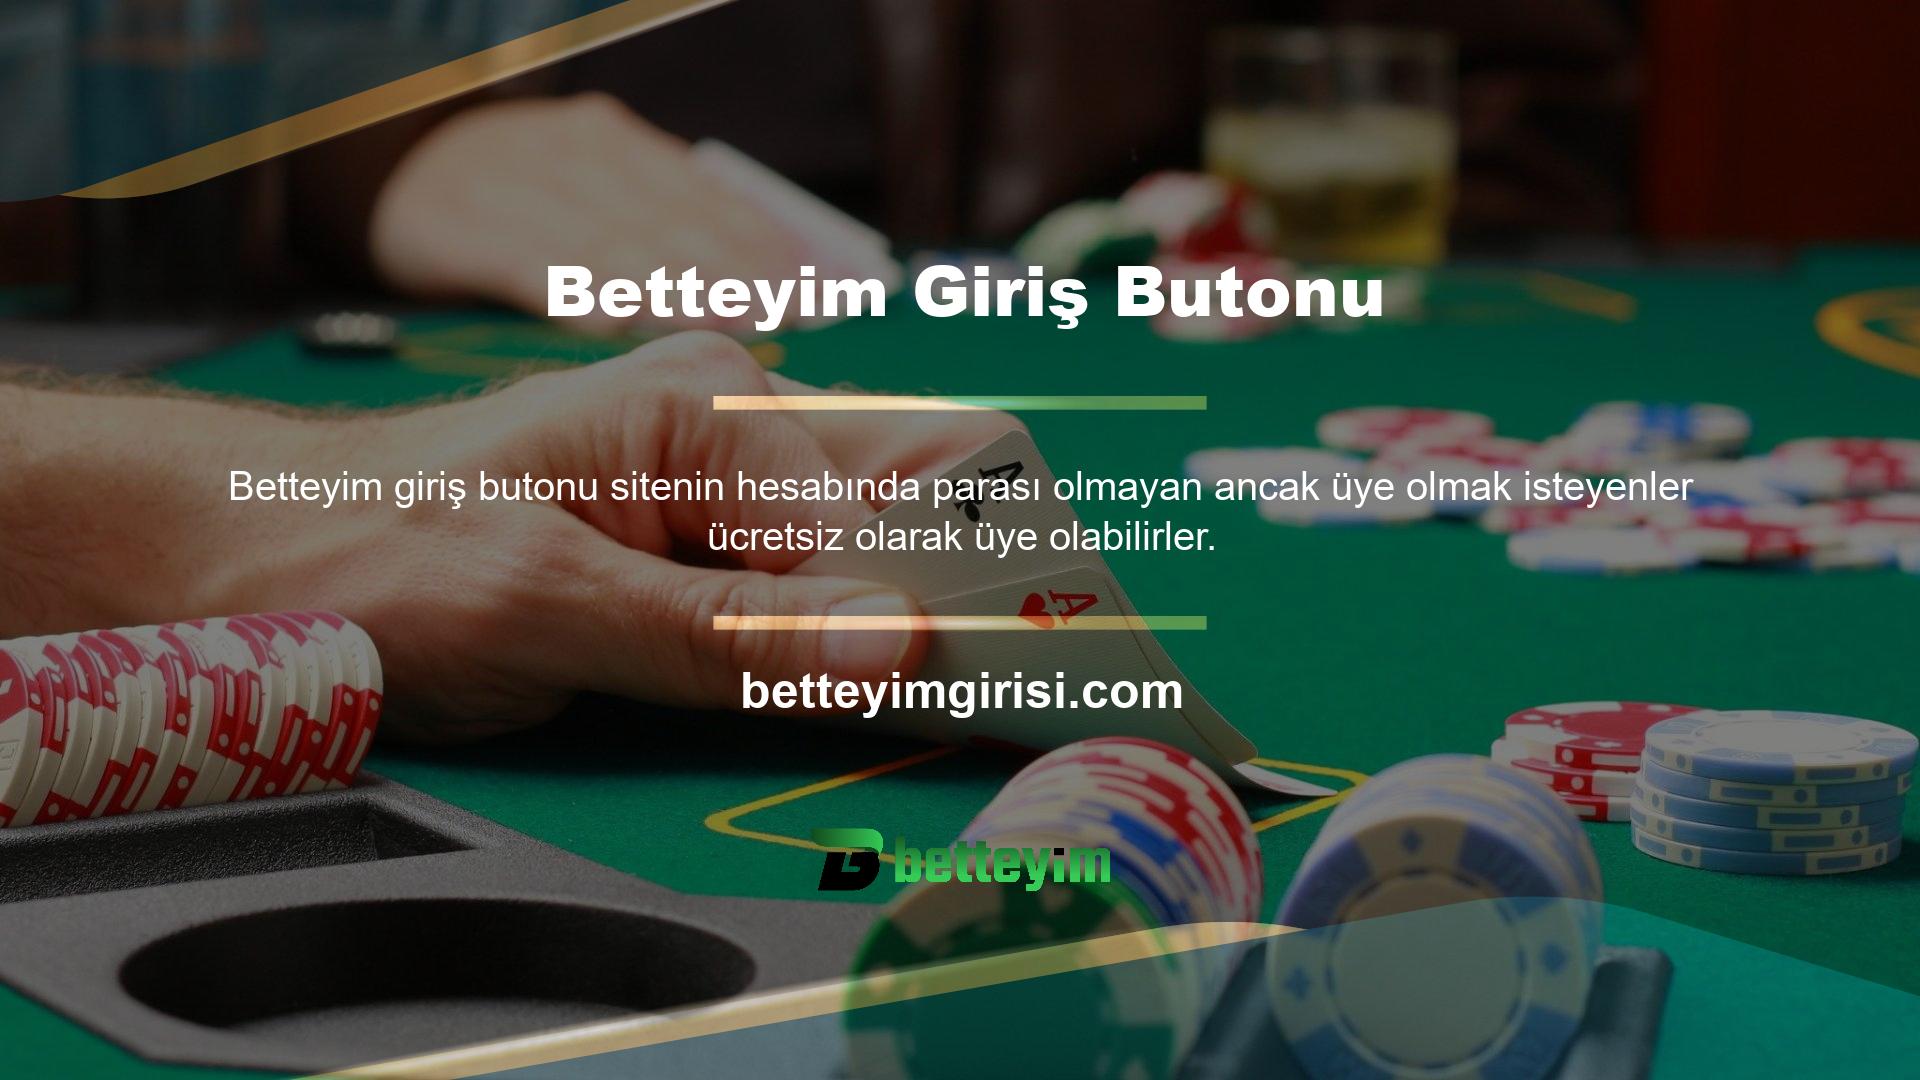 Betteyim Casino Oyunları için farklı seçenekler bulunmaktadır